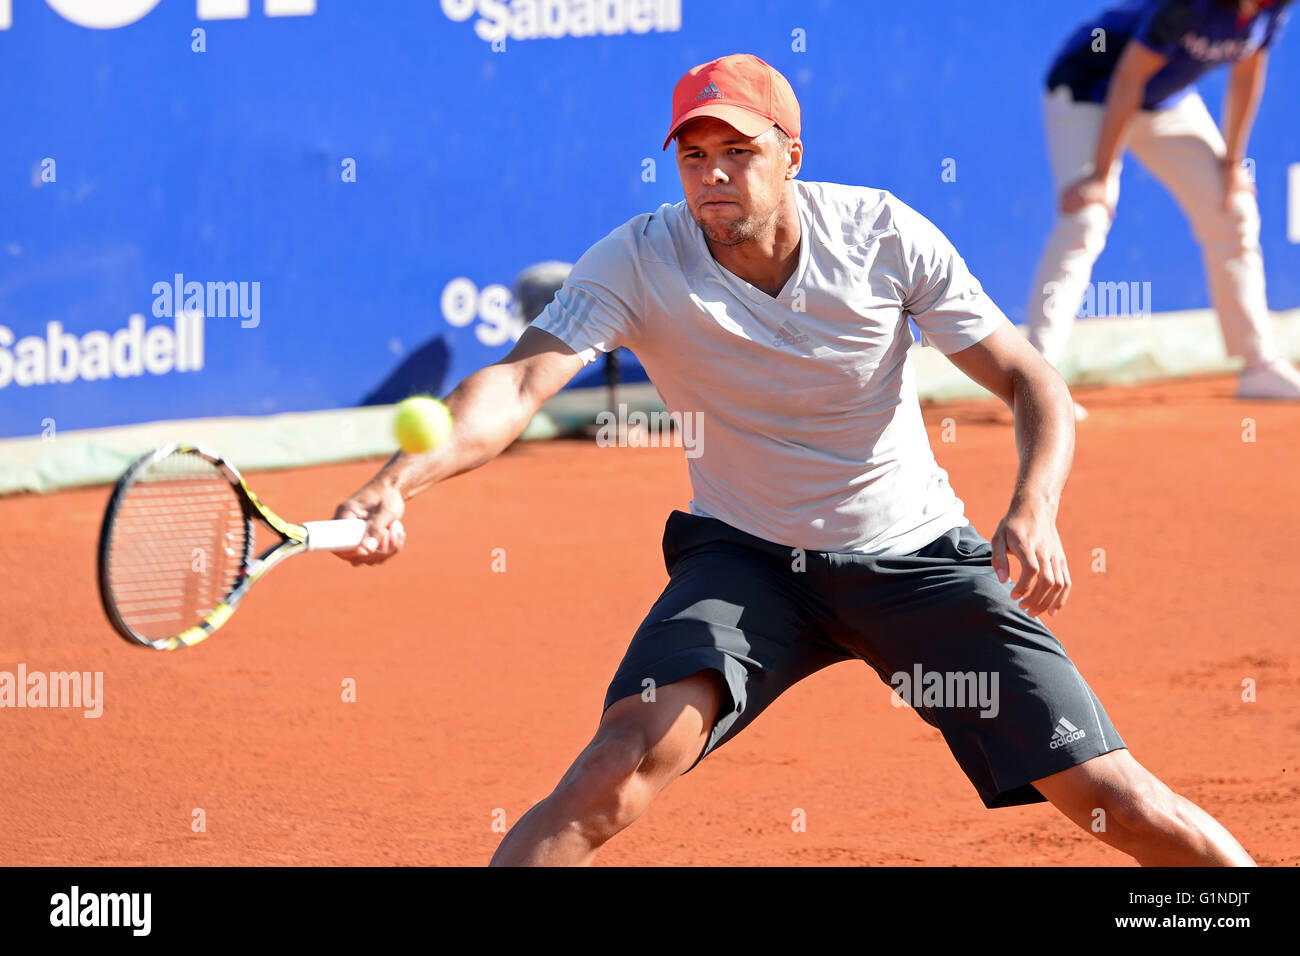 BARCELONA - 22 APR: Jo Wilfried Tsonga (französischer Tennisspieler) spielt bei der ATP Barcelona Open Banc Sabadell. Stockfoto